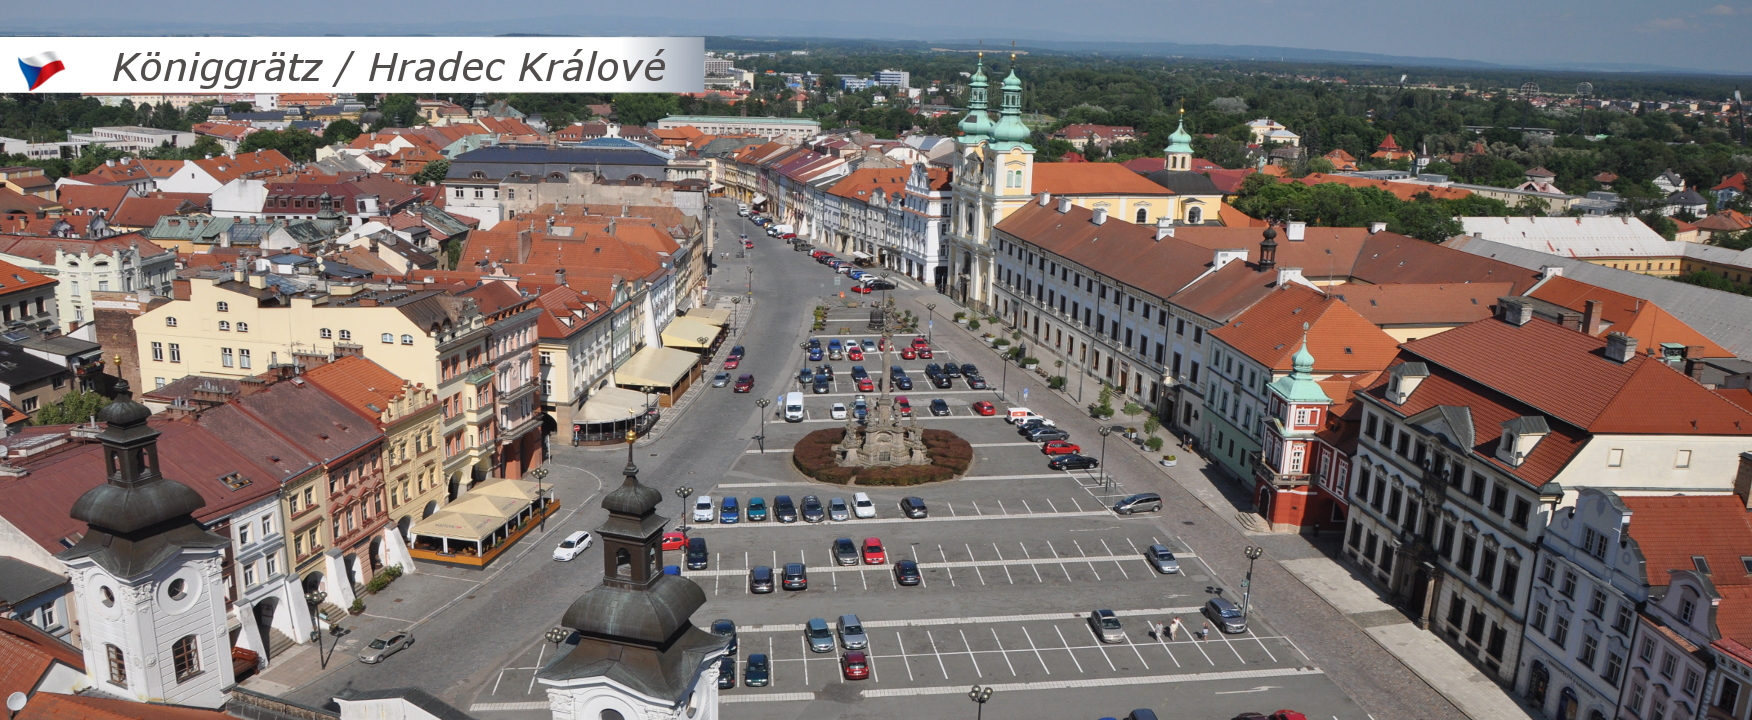 Hradec Králové / Königgrätz